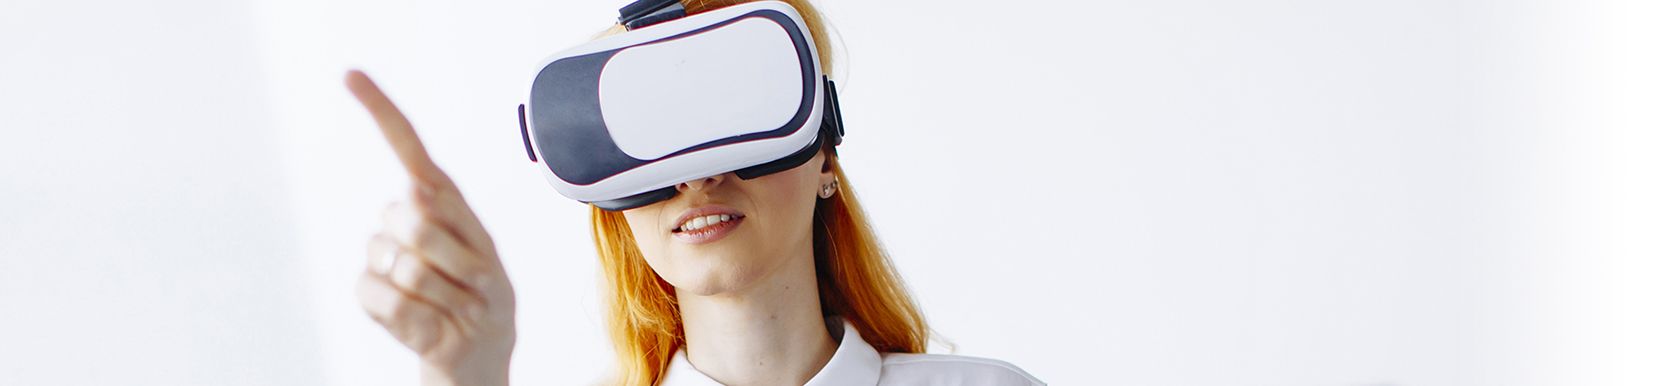 curso realidad virtual y aumentada